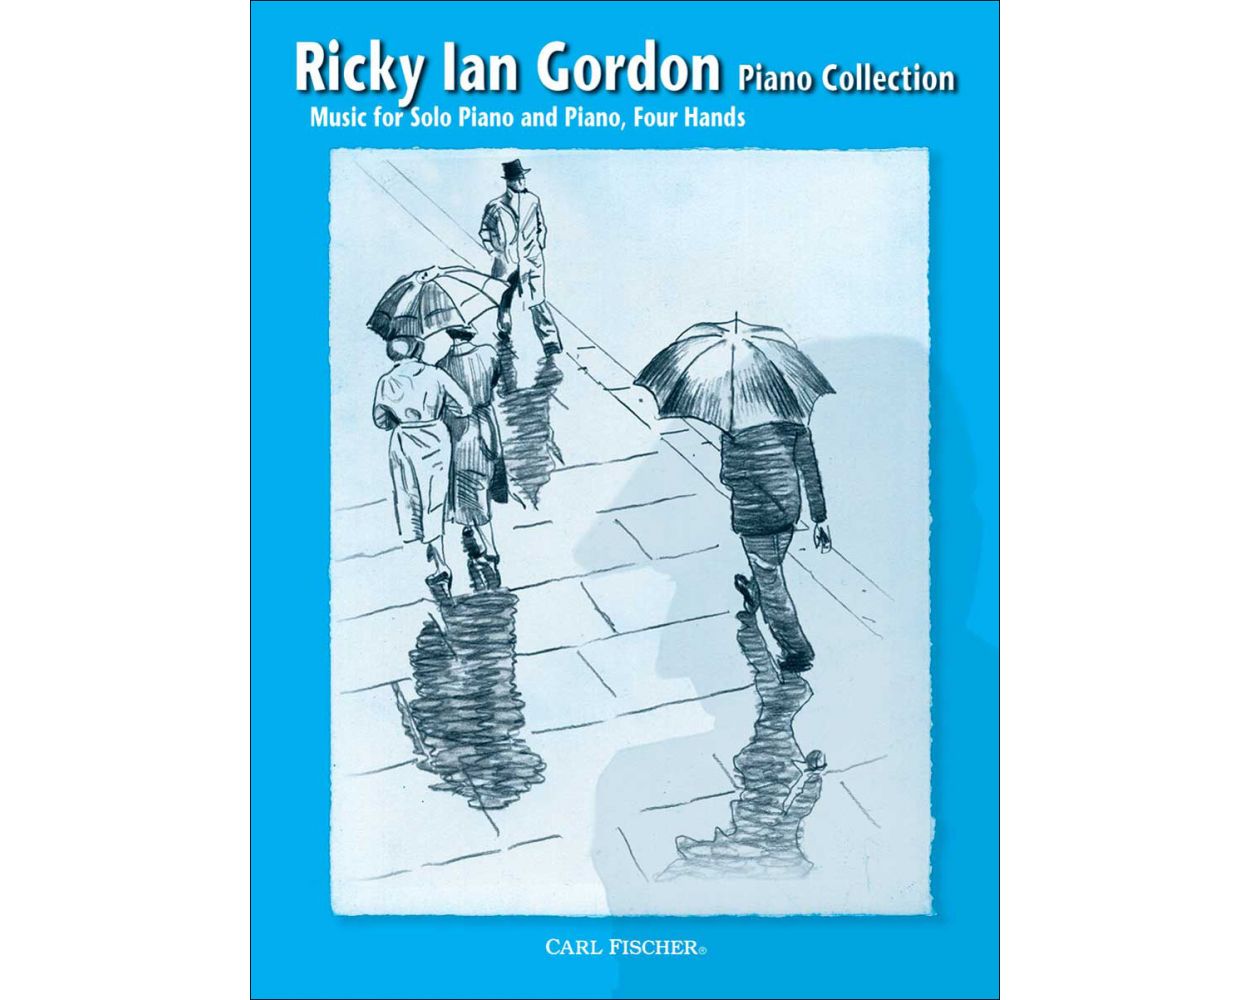 Gordon Piano Collection